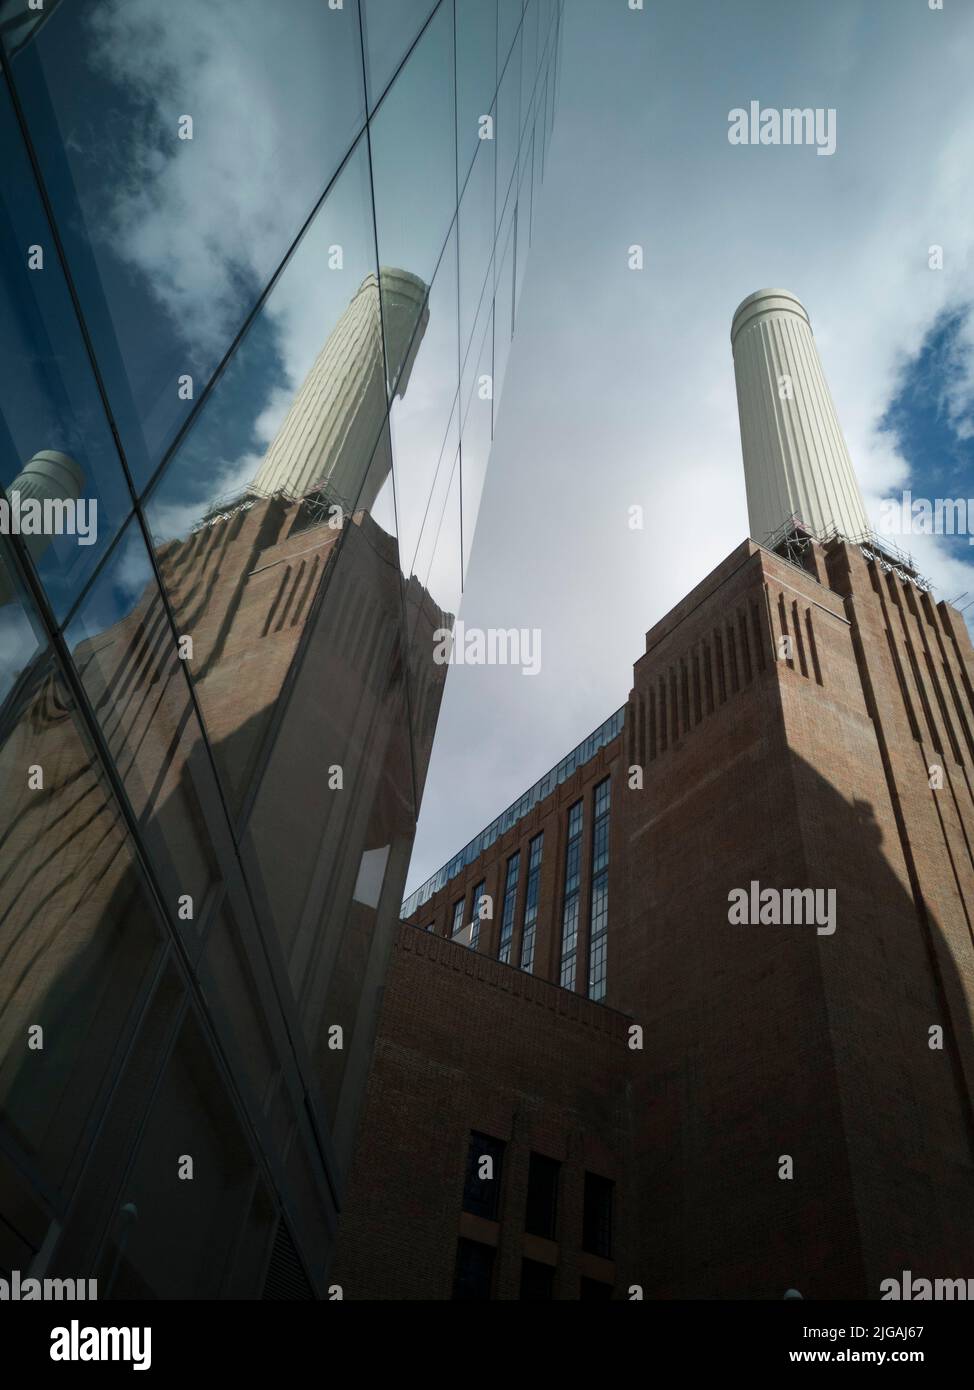 Autour de Battersea Power Station, Londres, Royaume-Uni, octobre 2021. Les tours reconditionnées de la station électrique Battersea désormais rééquipée. Banque D'Images